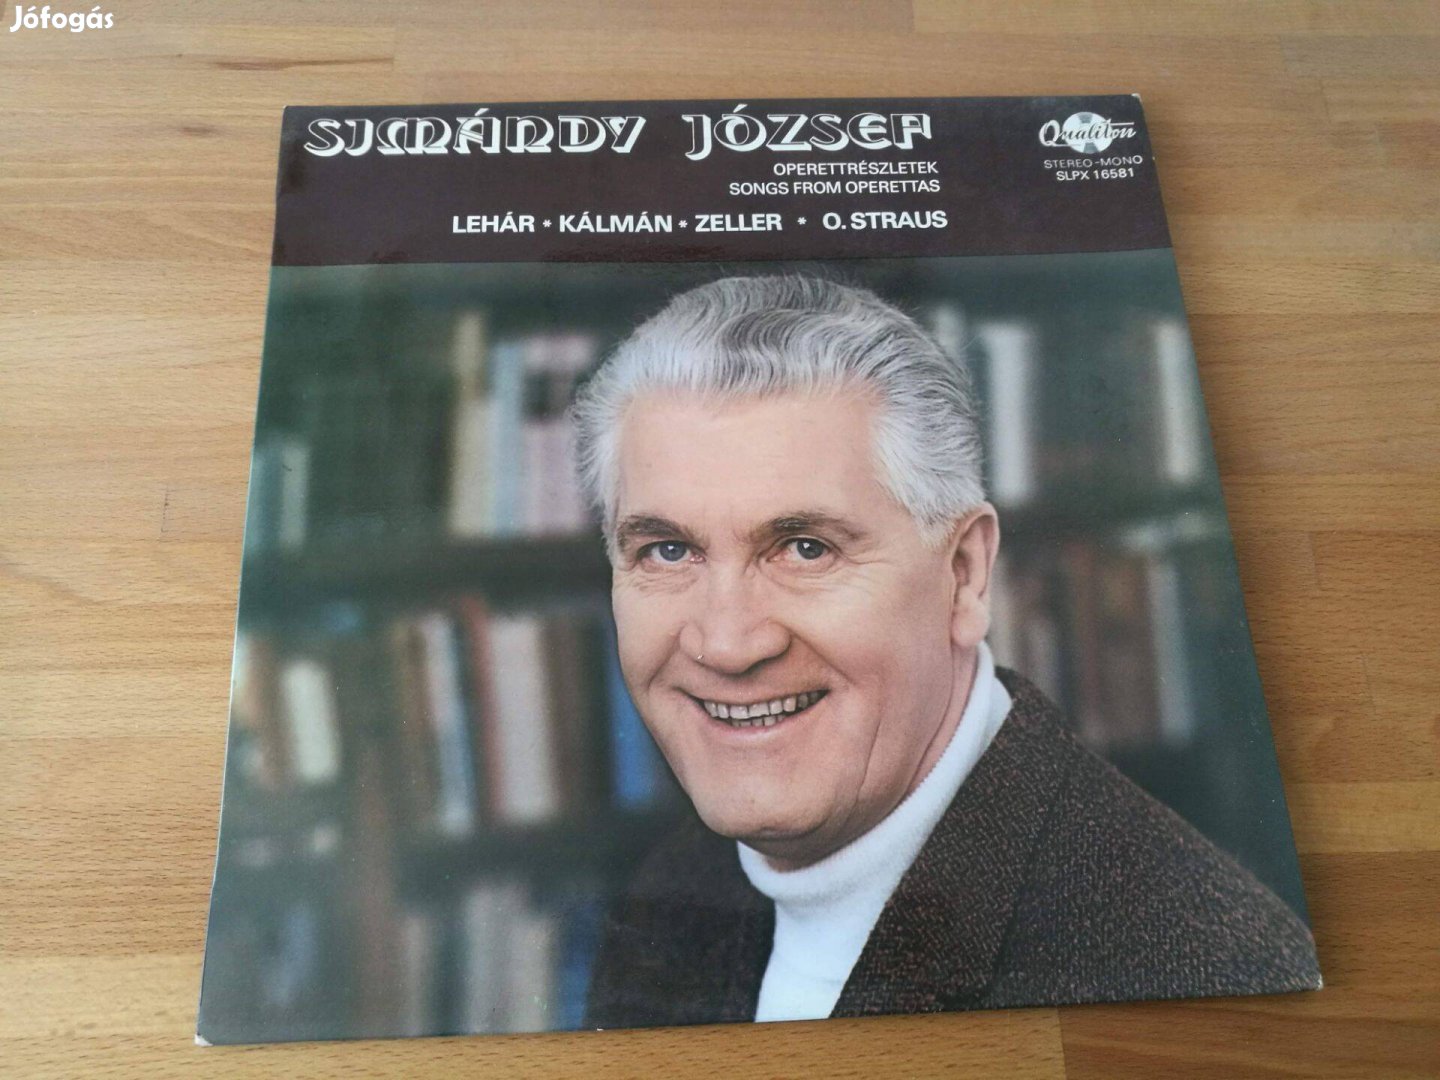 Simándy József operettdalokat énekel (Qualiton, HU, LP)